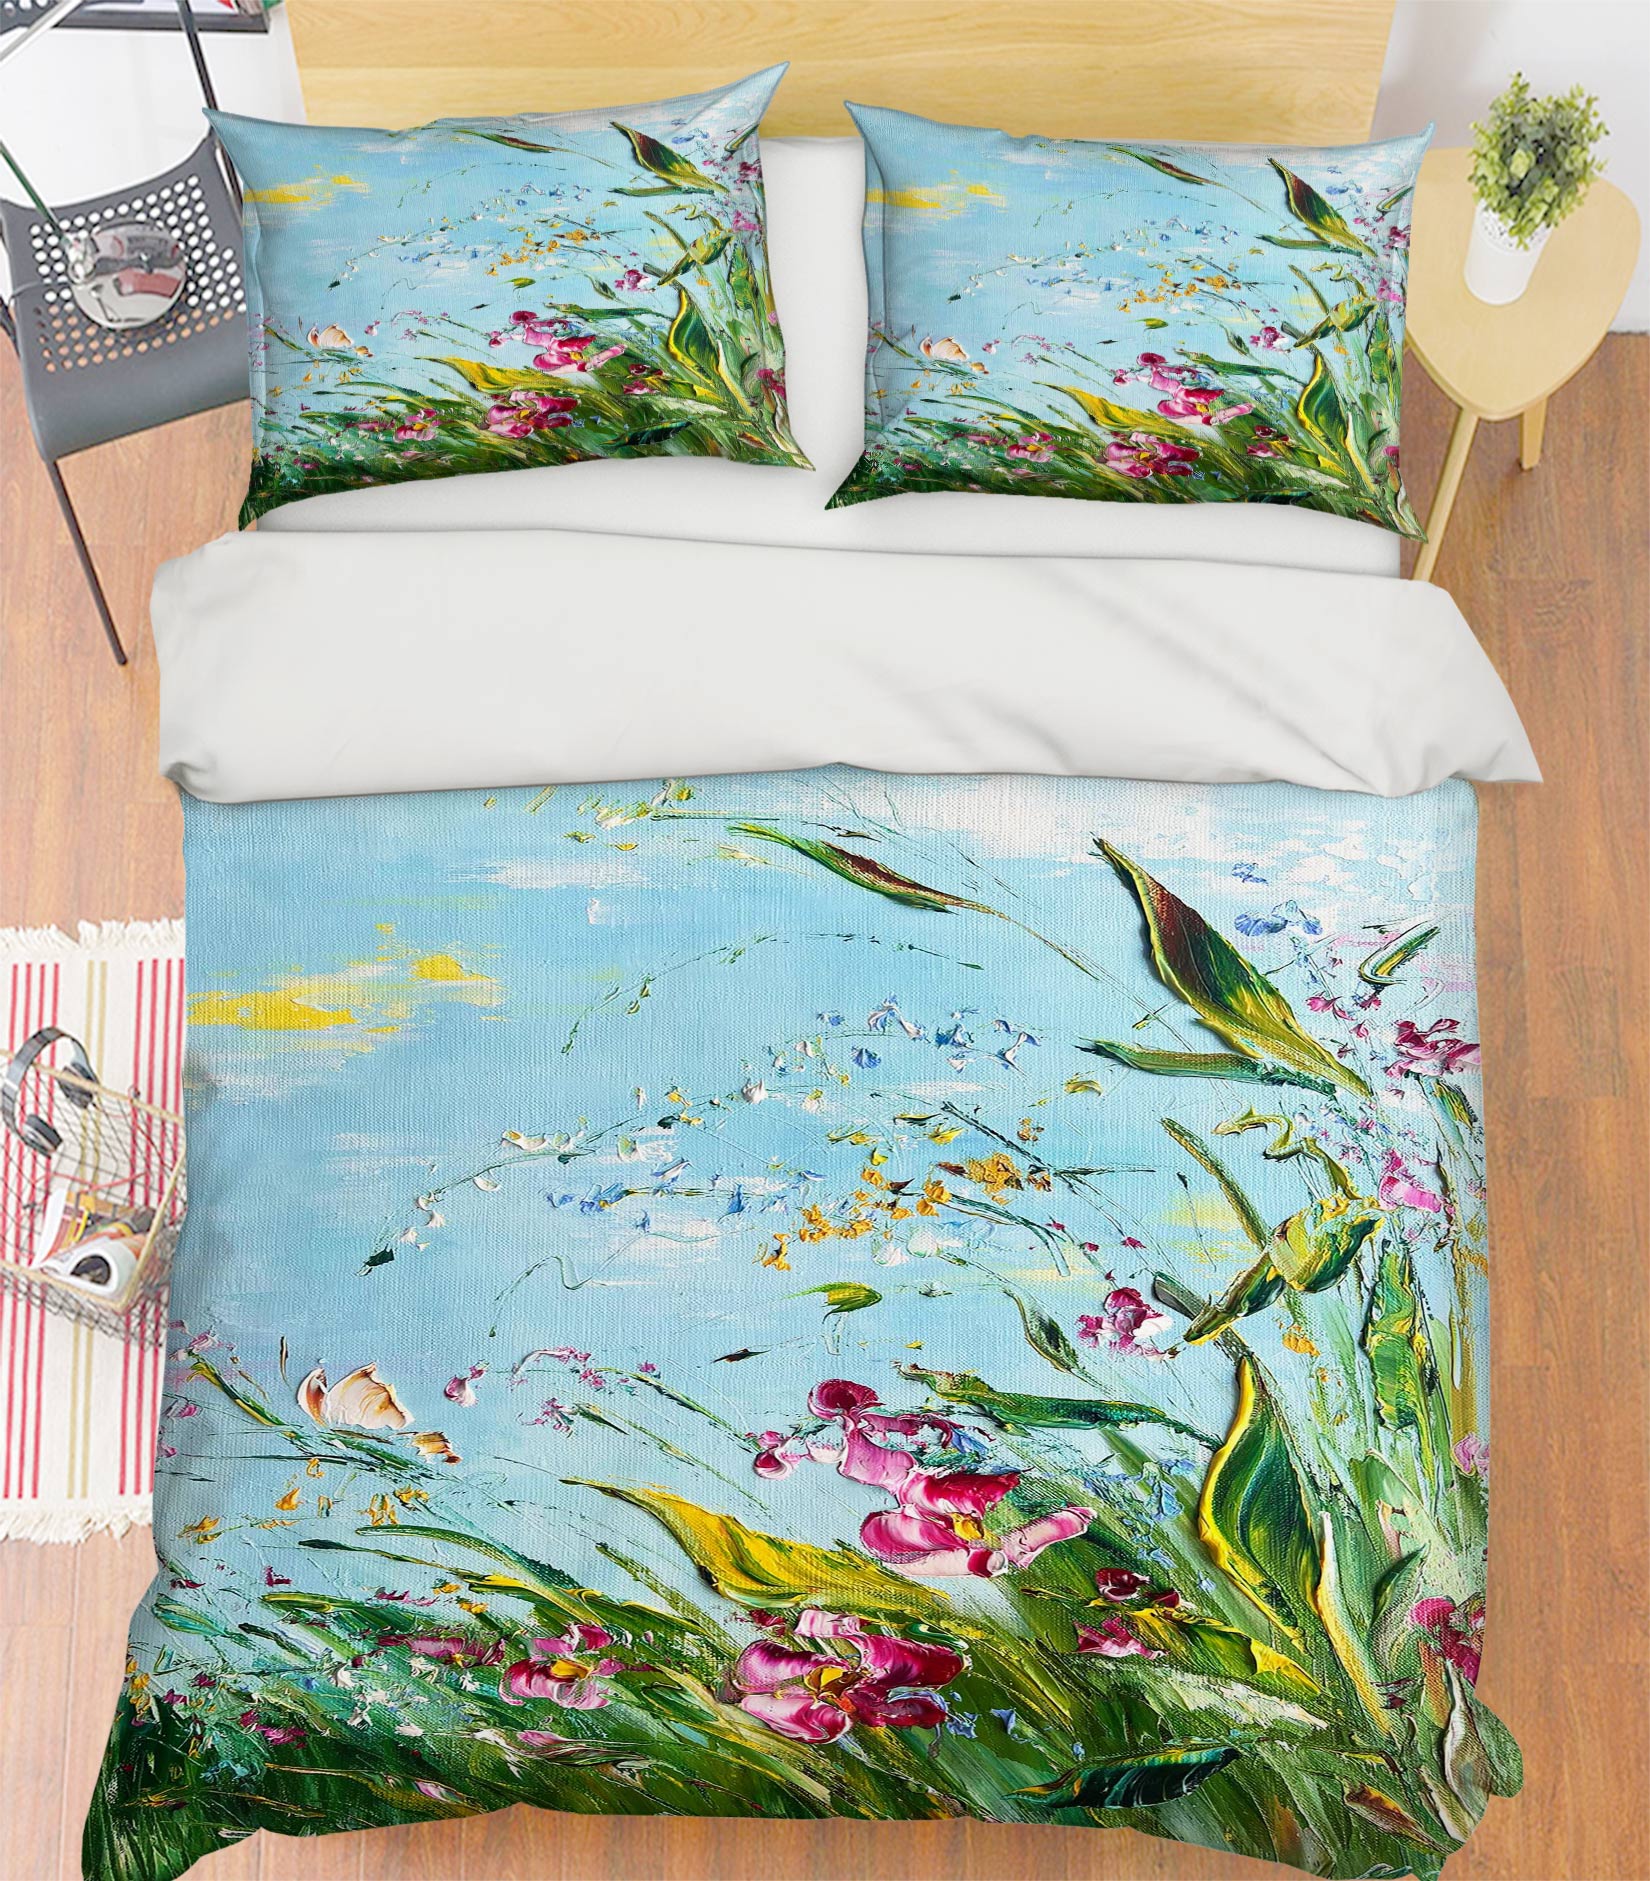 3D Grass Butterfly 511 Skromova Marina Bedding Bed Pillowcases Quilt